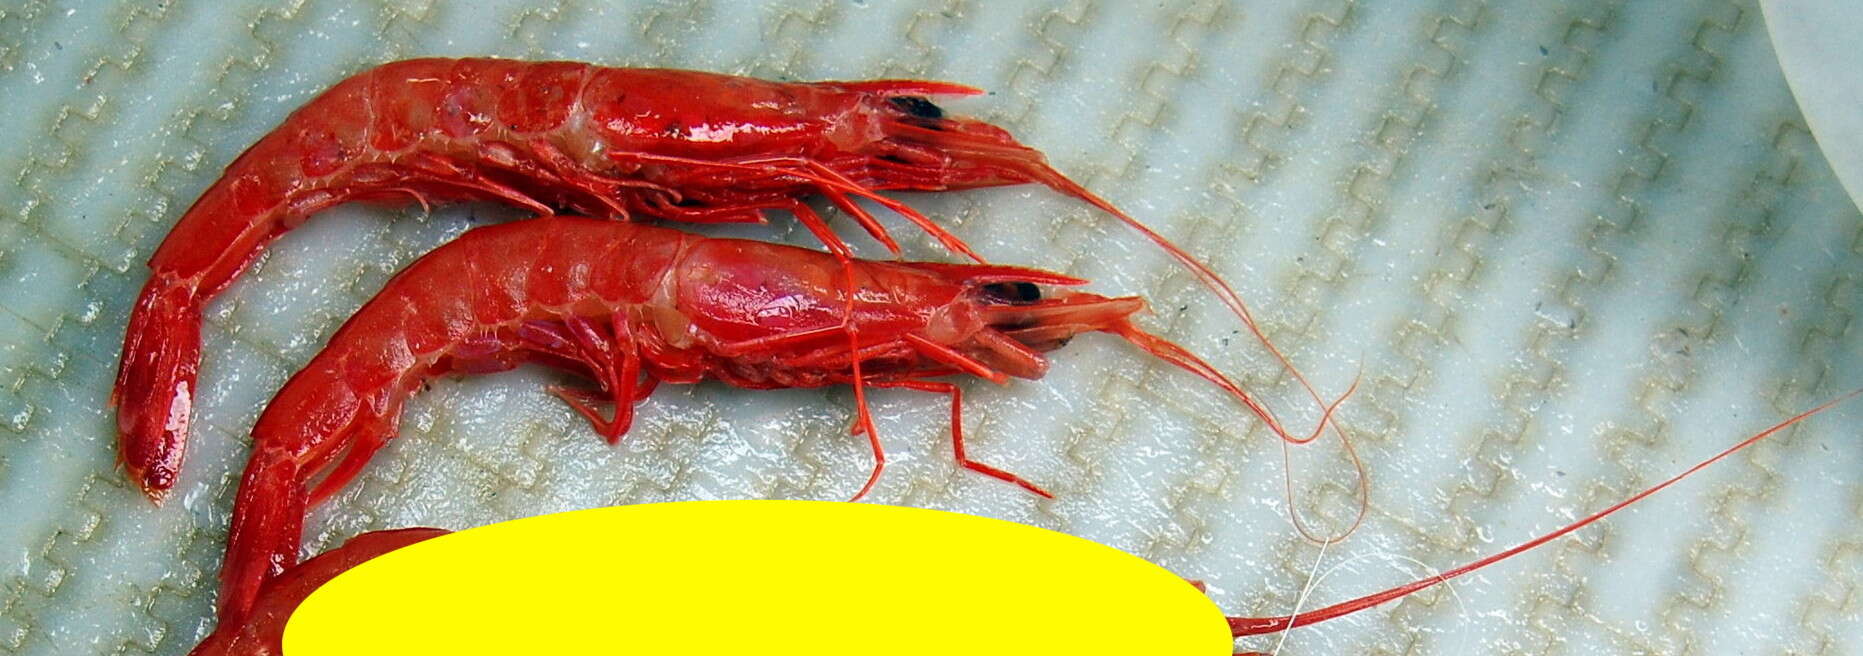 Image of royal red prawn